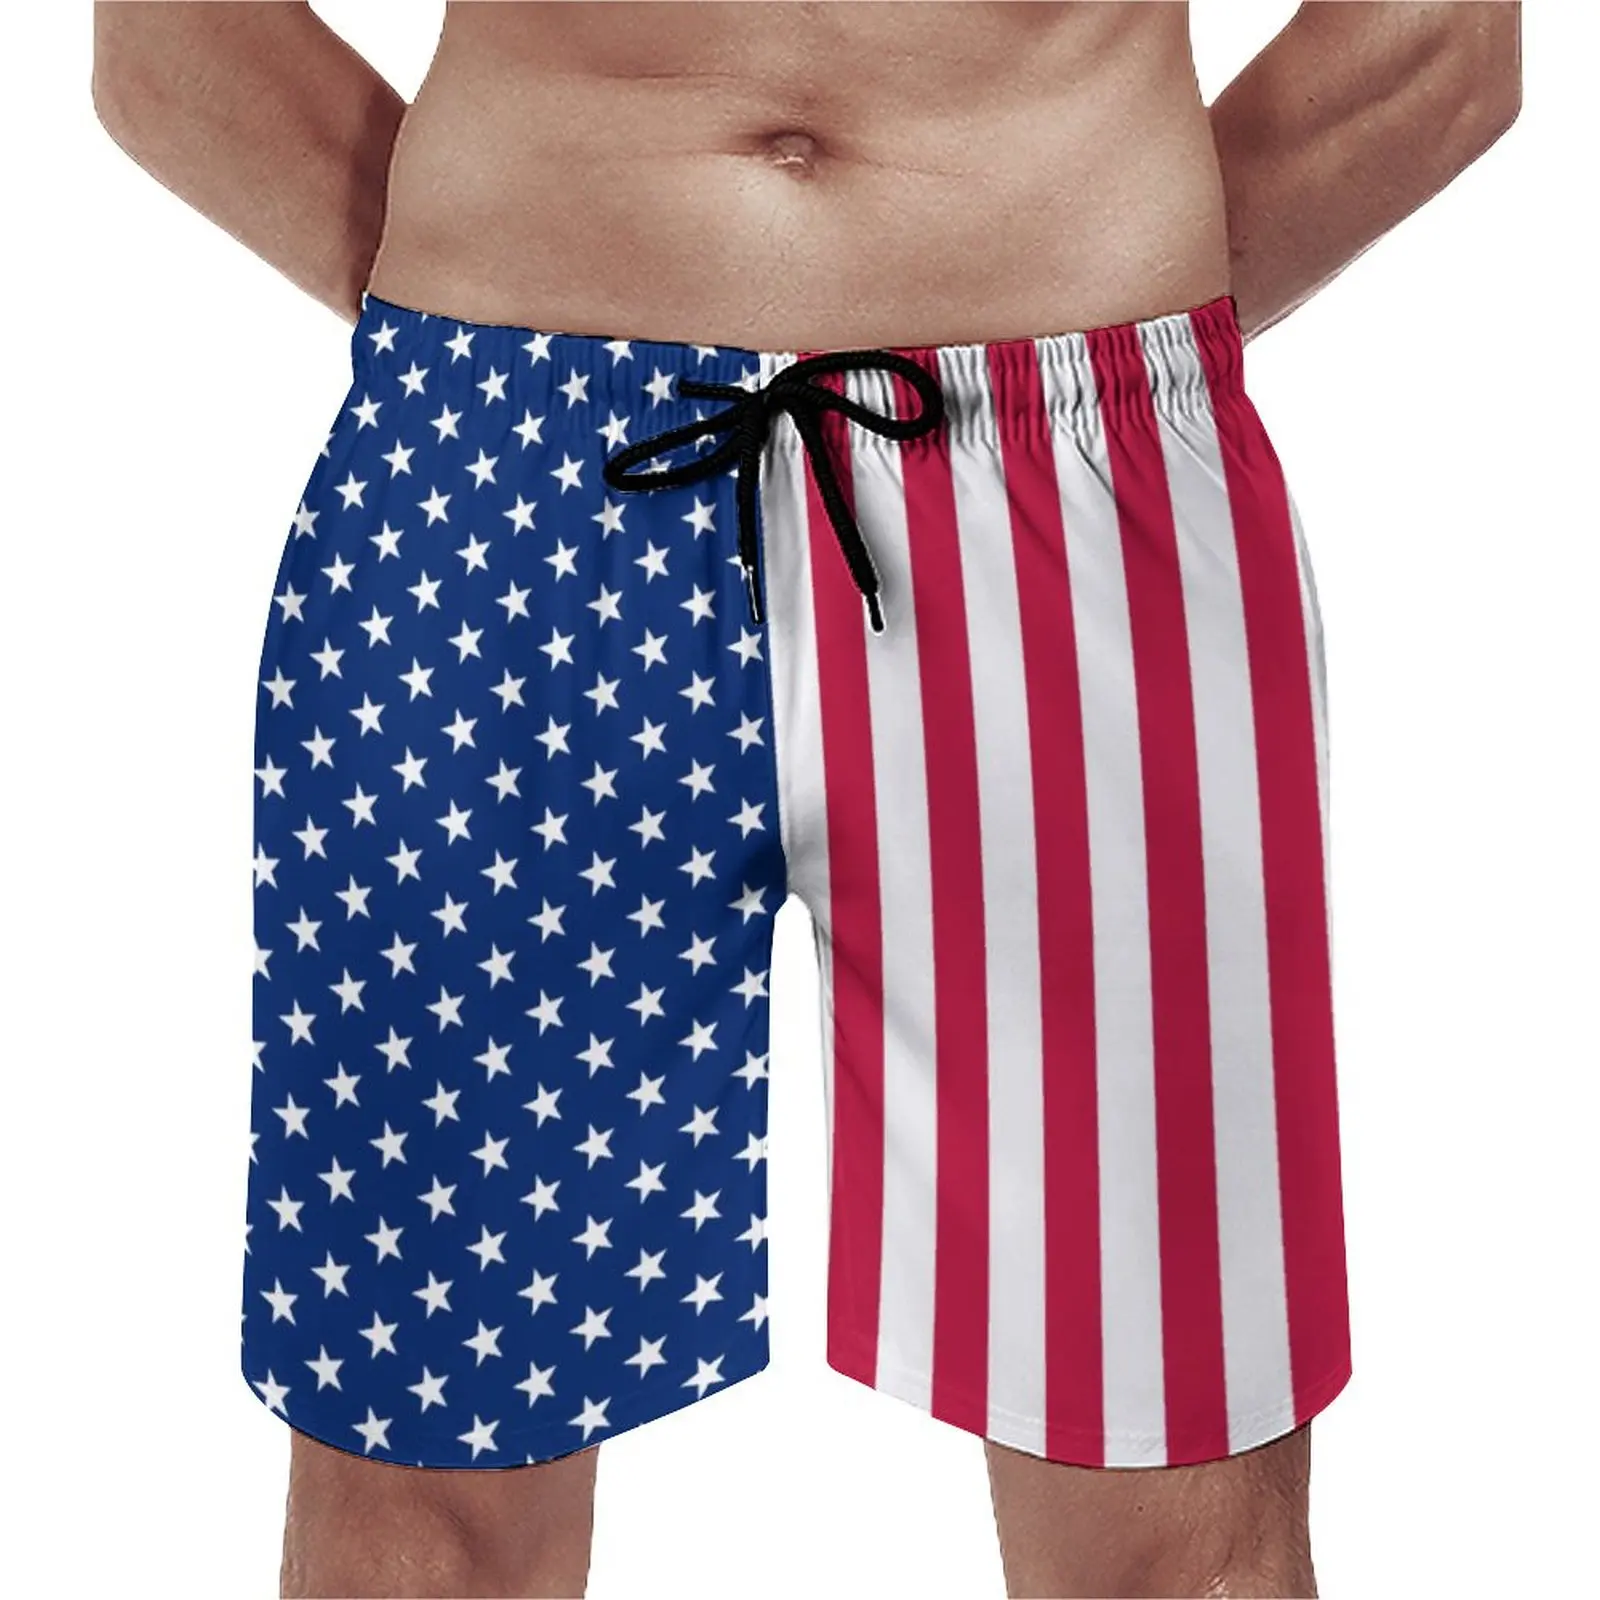 

Пляжные шорты с принтом, мужские плавки с флагом США, красные, белые, синие, большие размеры